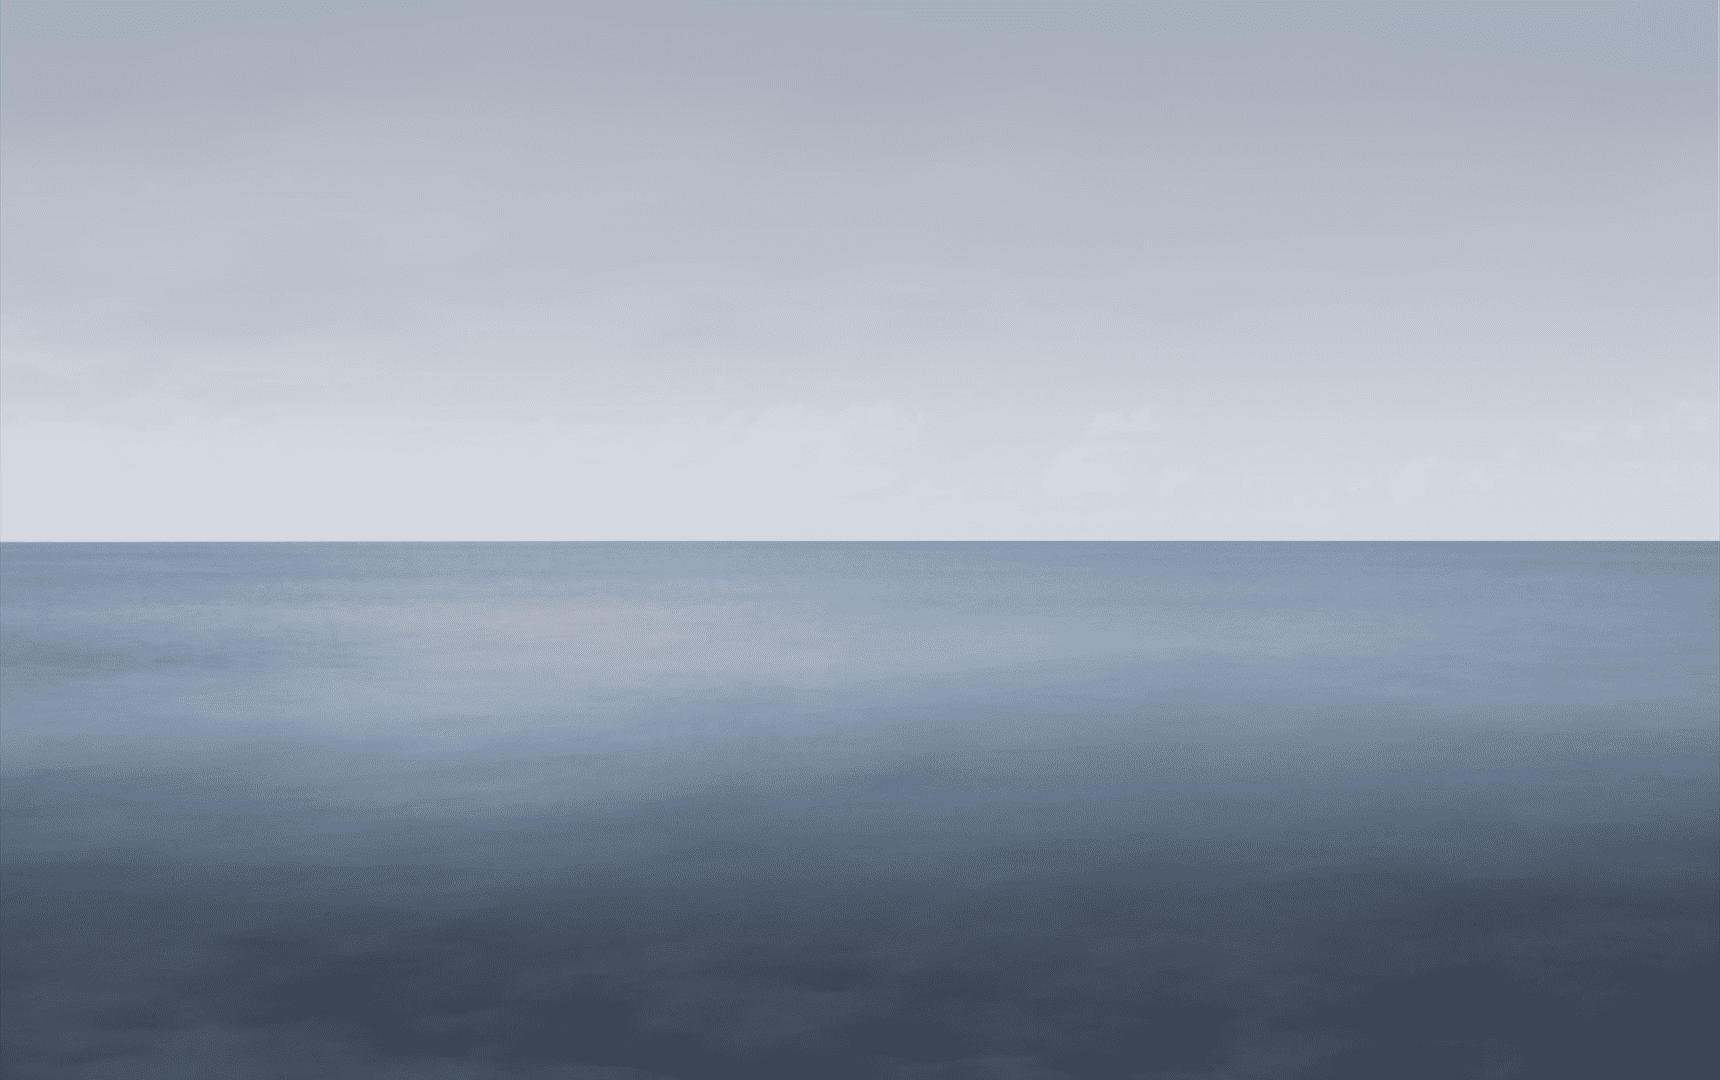 Image of a sea scape